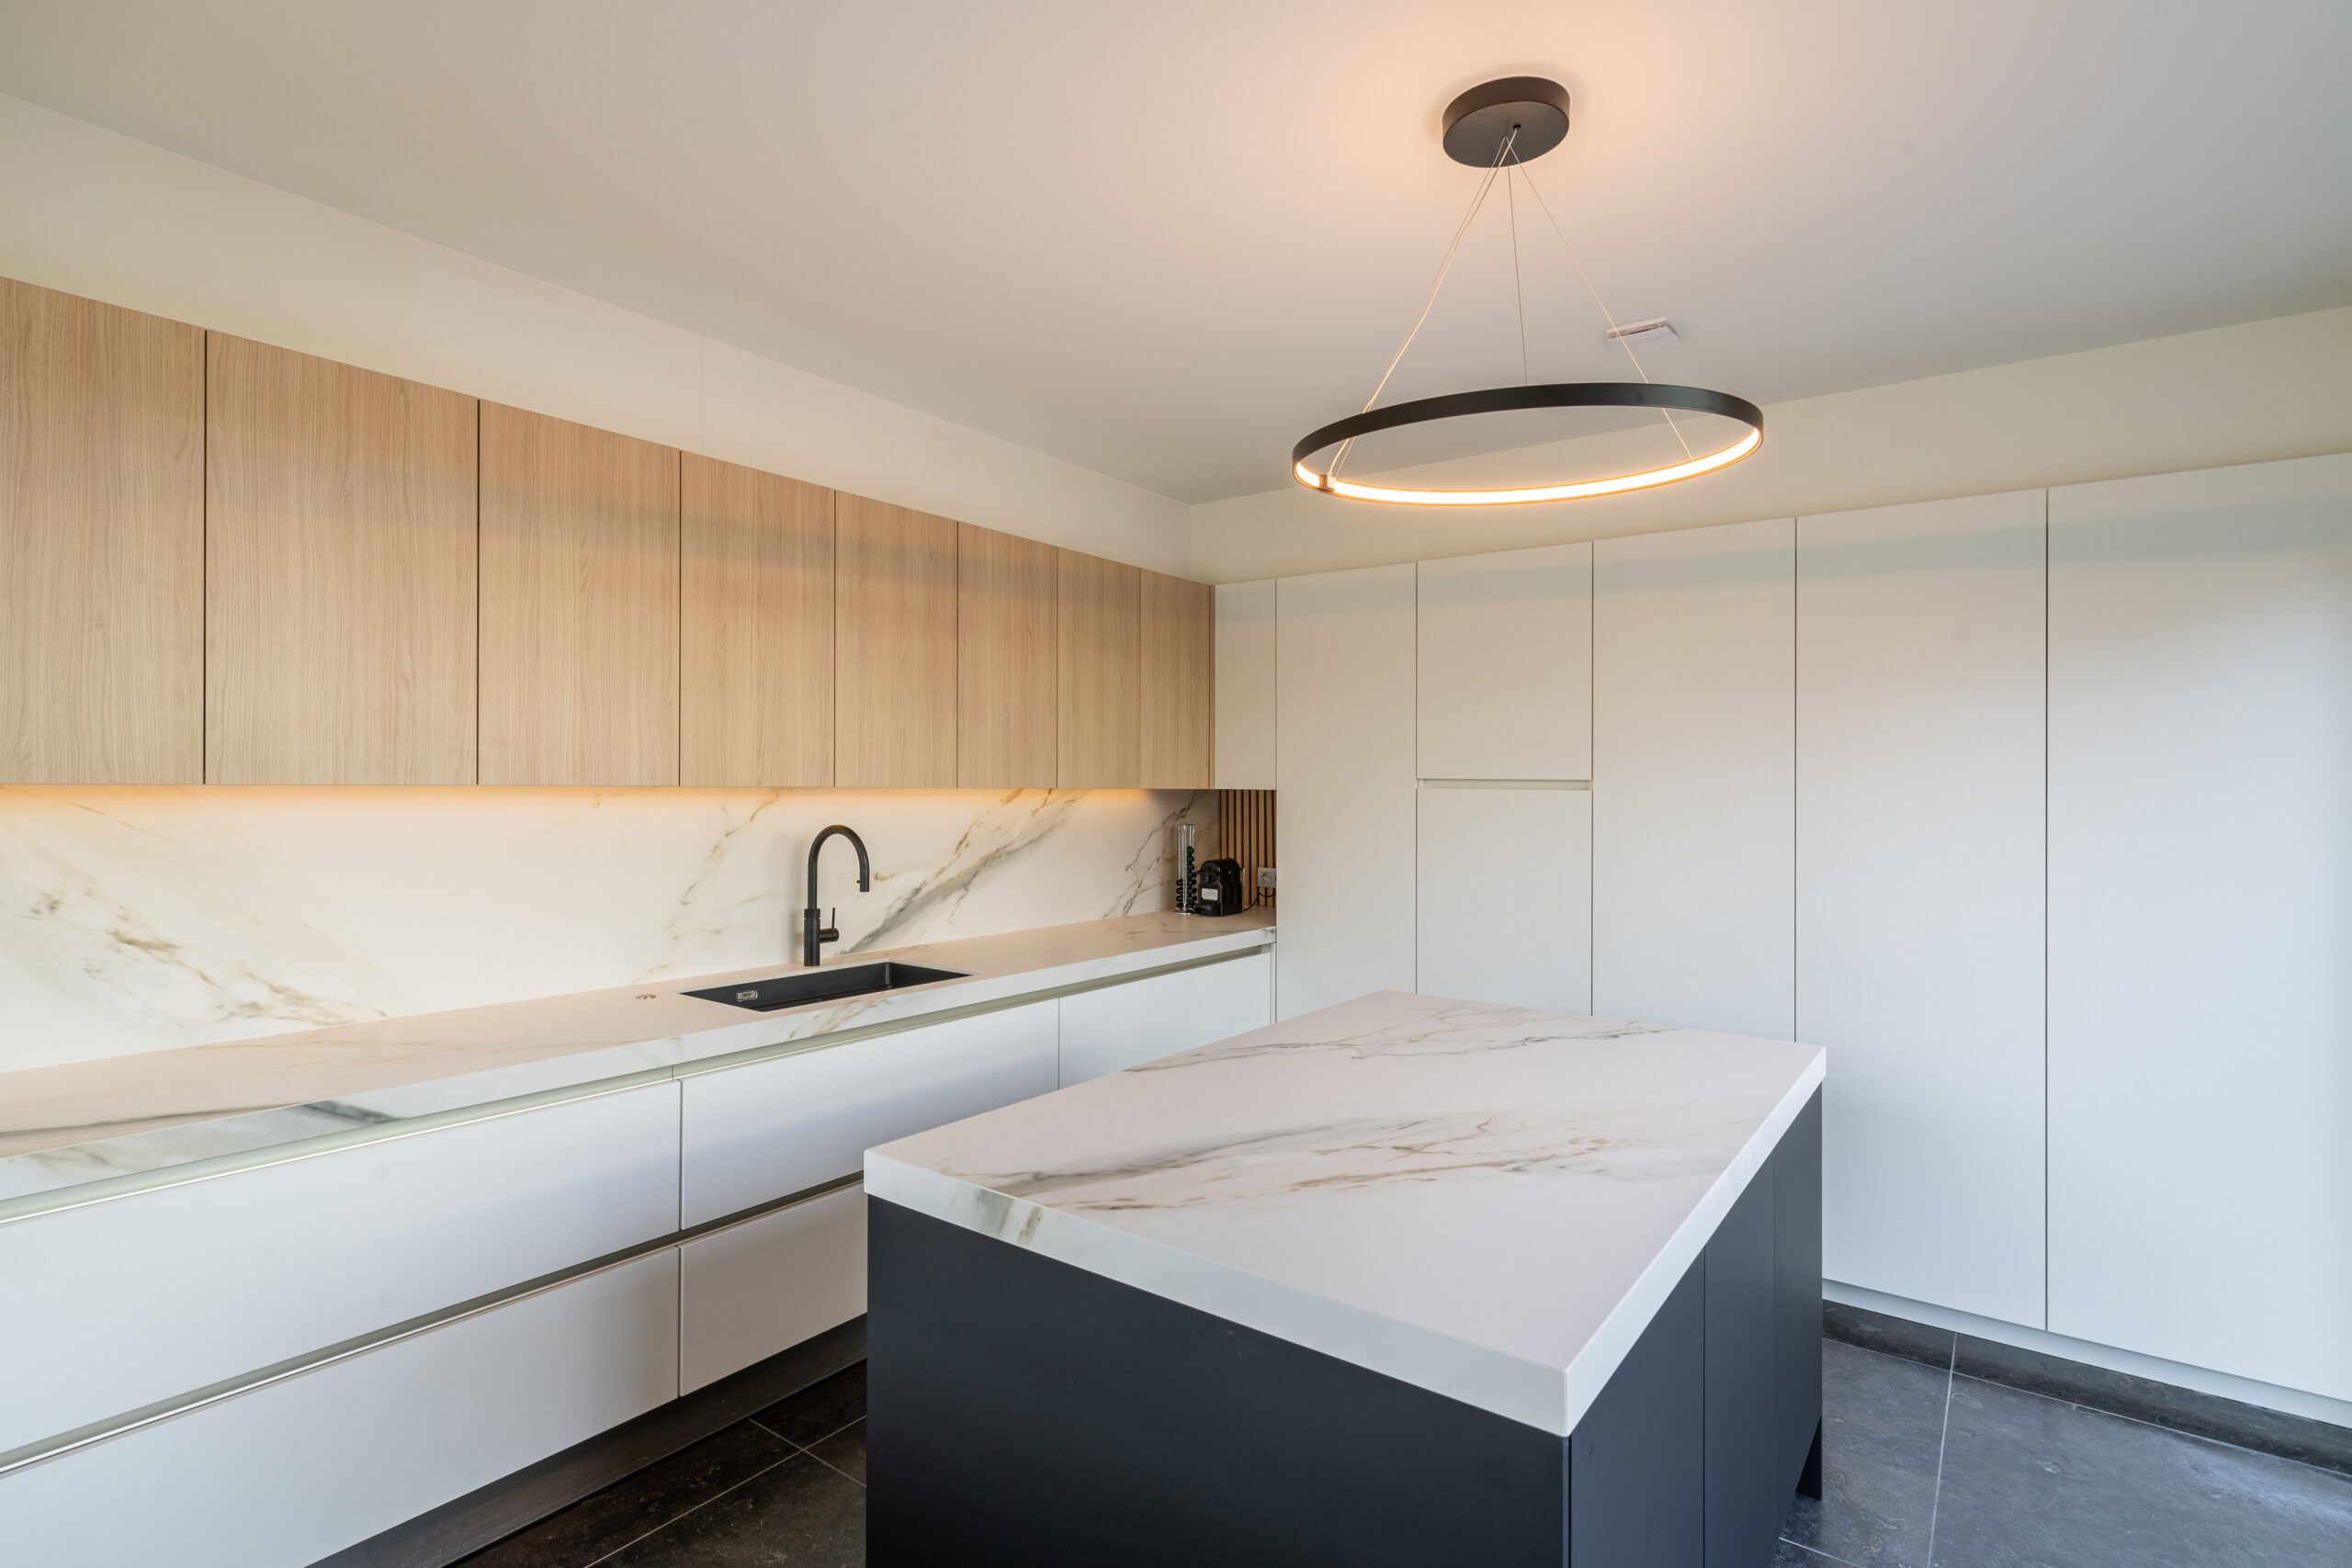 Evolution-Design Meubels-Interieurs-Binnenhuisarchitectuur-Keukenrenovatie-Keuken op maat